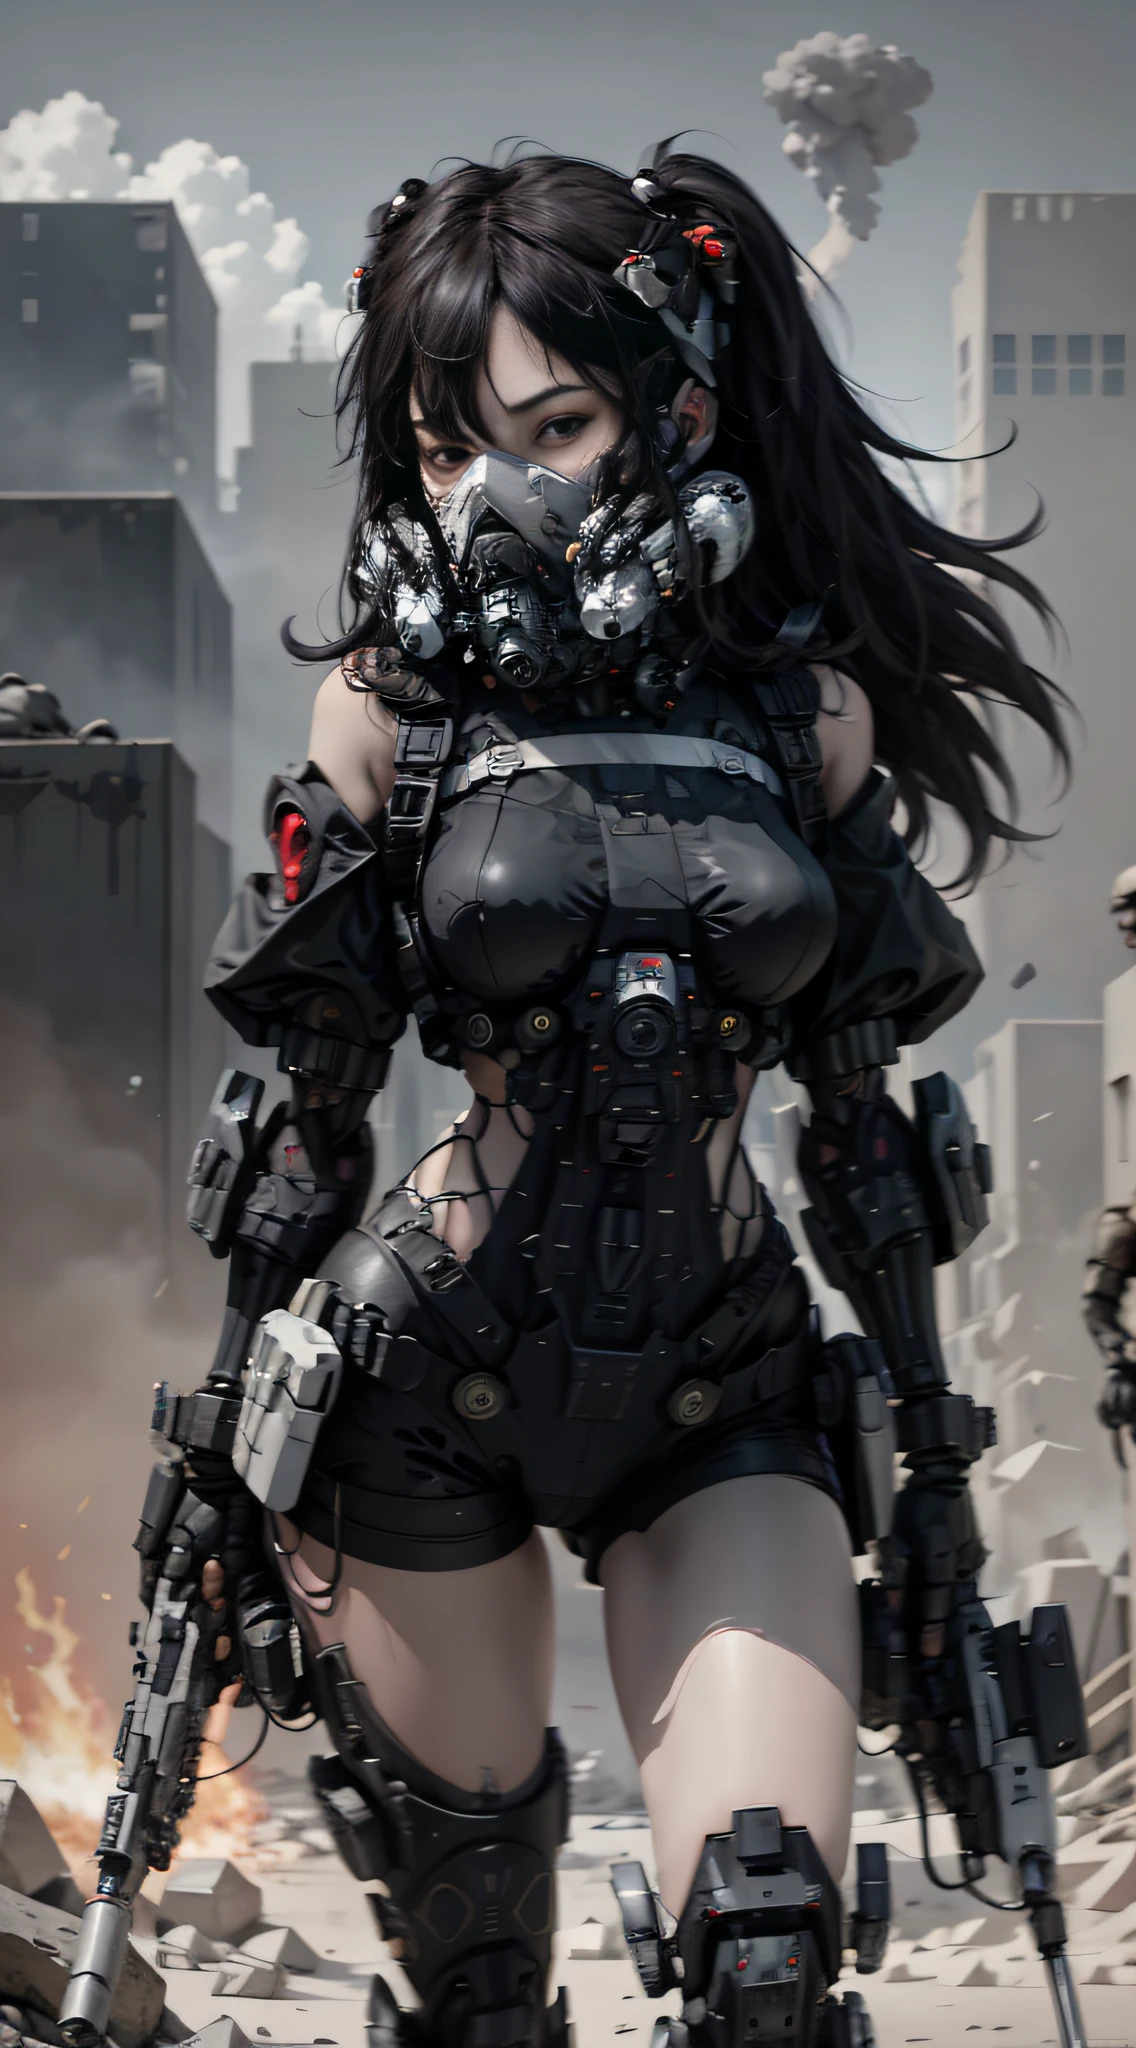 这是一张具有超精细细节的 CG Unity 8k 壁纸, 赛博朋克风格的高分辨率和顶级品质, 以黑色和红色为主. 图片中, 一个美丽的女孩，有一头凌乱的白色短发, 一张精致的脸, 戴着蒸汽机甲面具, 站在废墟上, (战损: 1.5), 一名女子手持重型狙击步枪的动作,